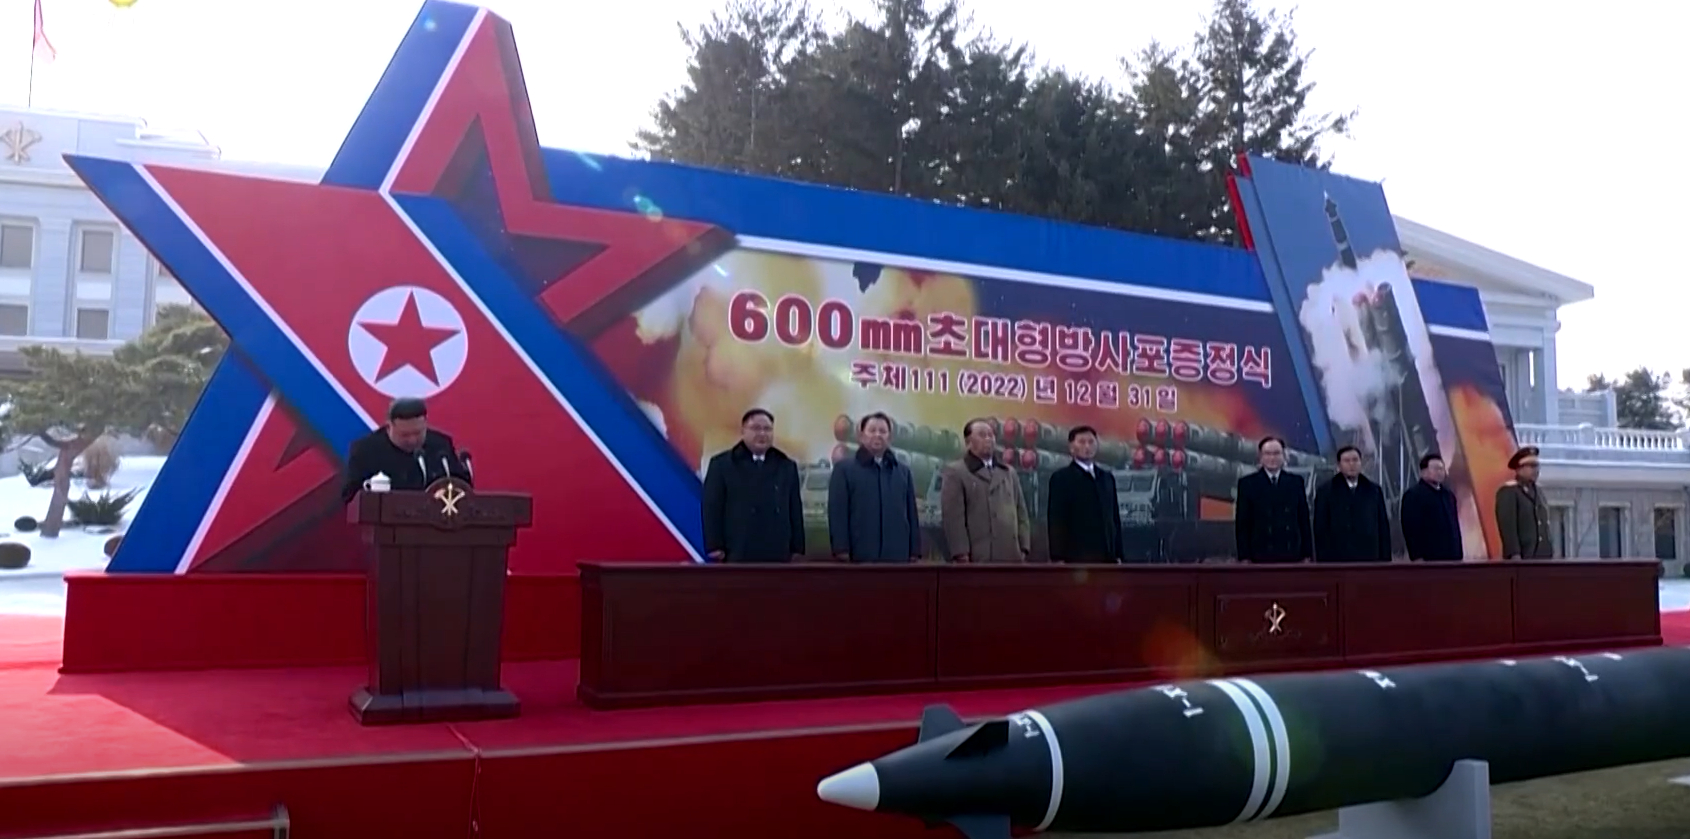 Ким Чен Ын на митинге в честь завершения разработки новой баллистической ракеты(Фото – скриншот из видео)